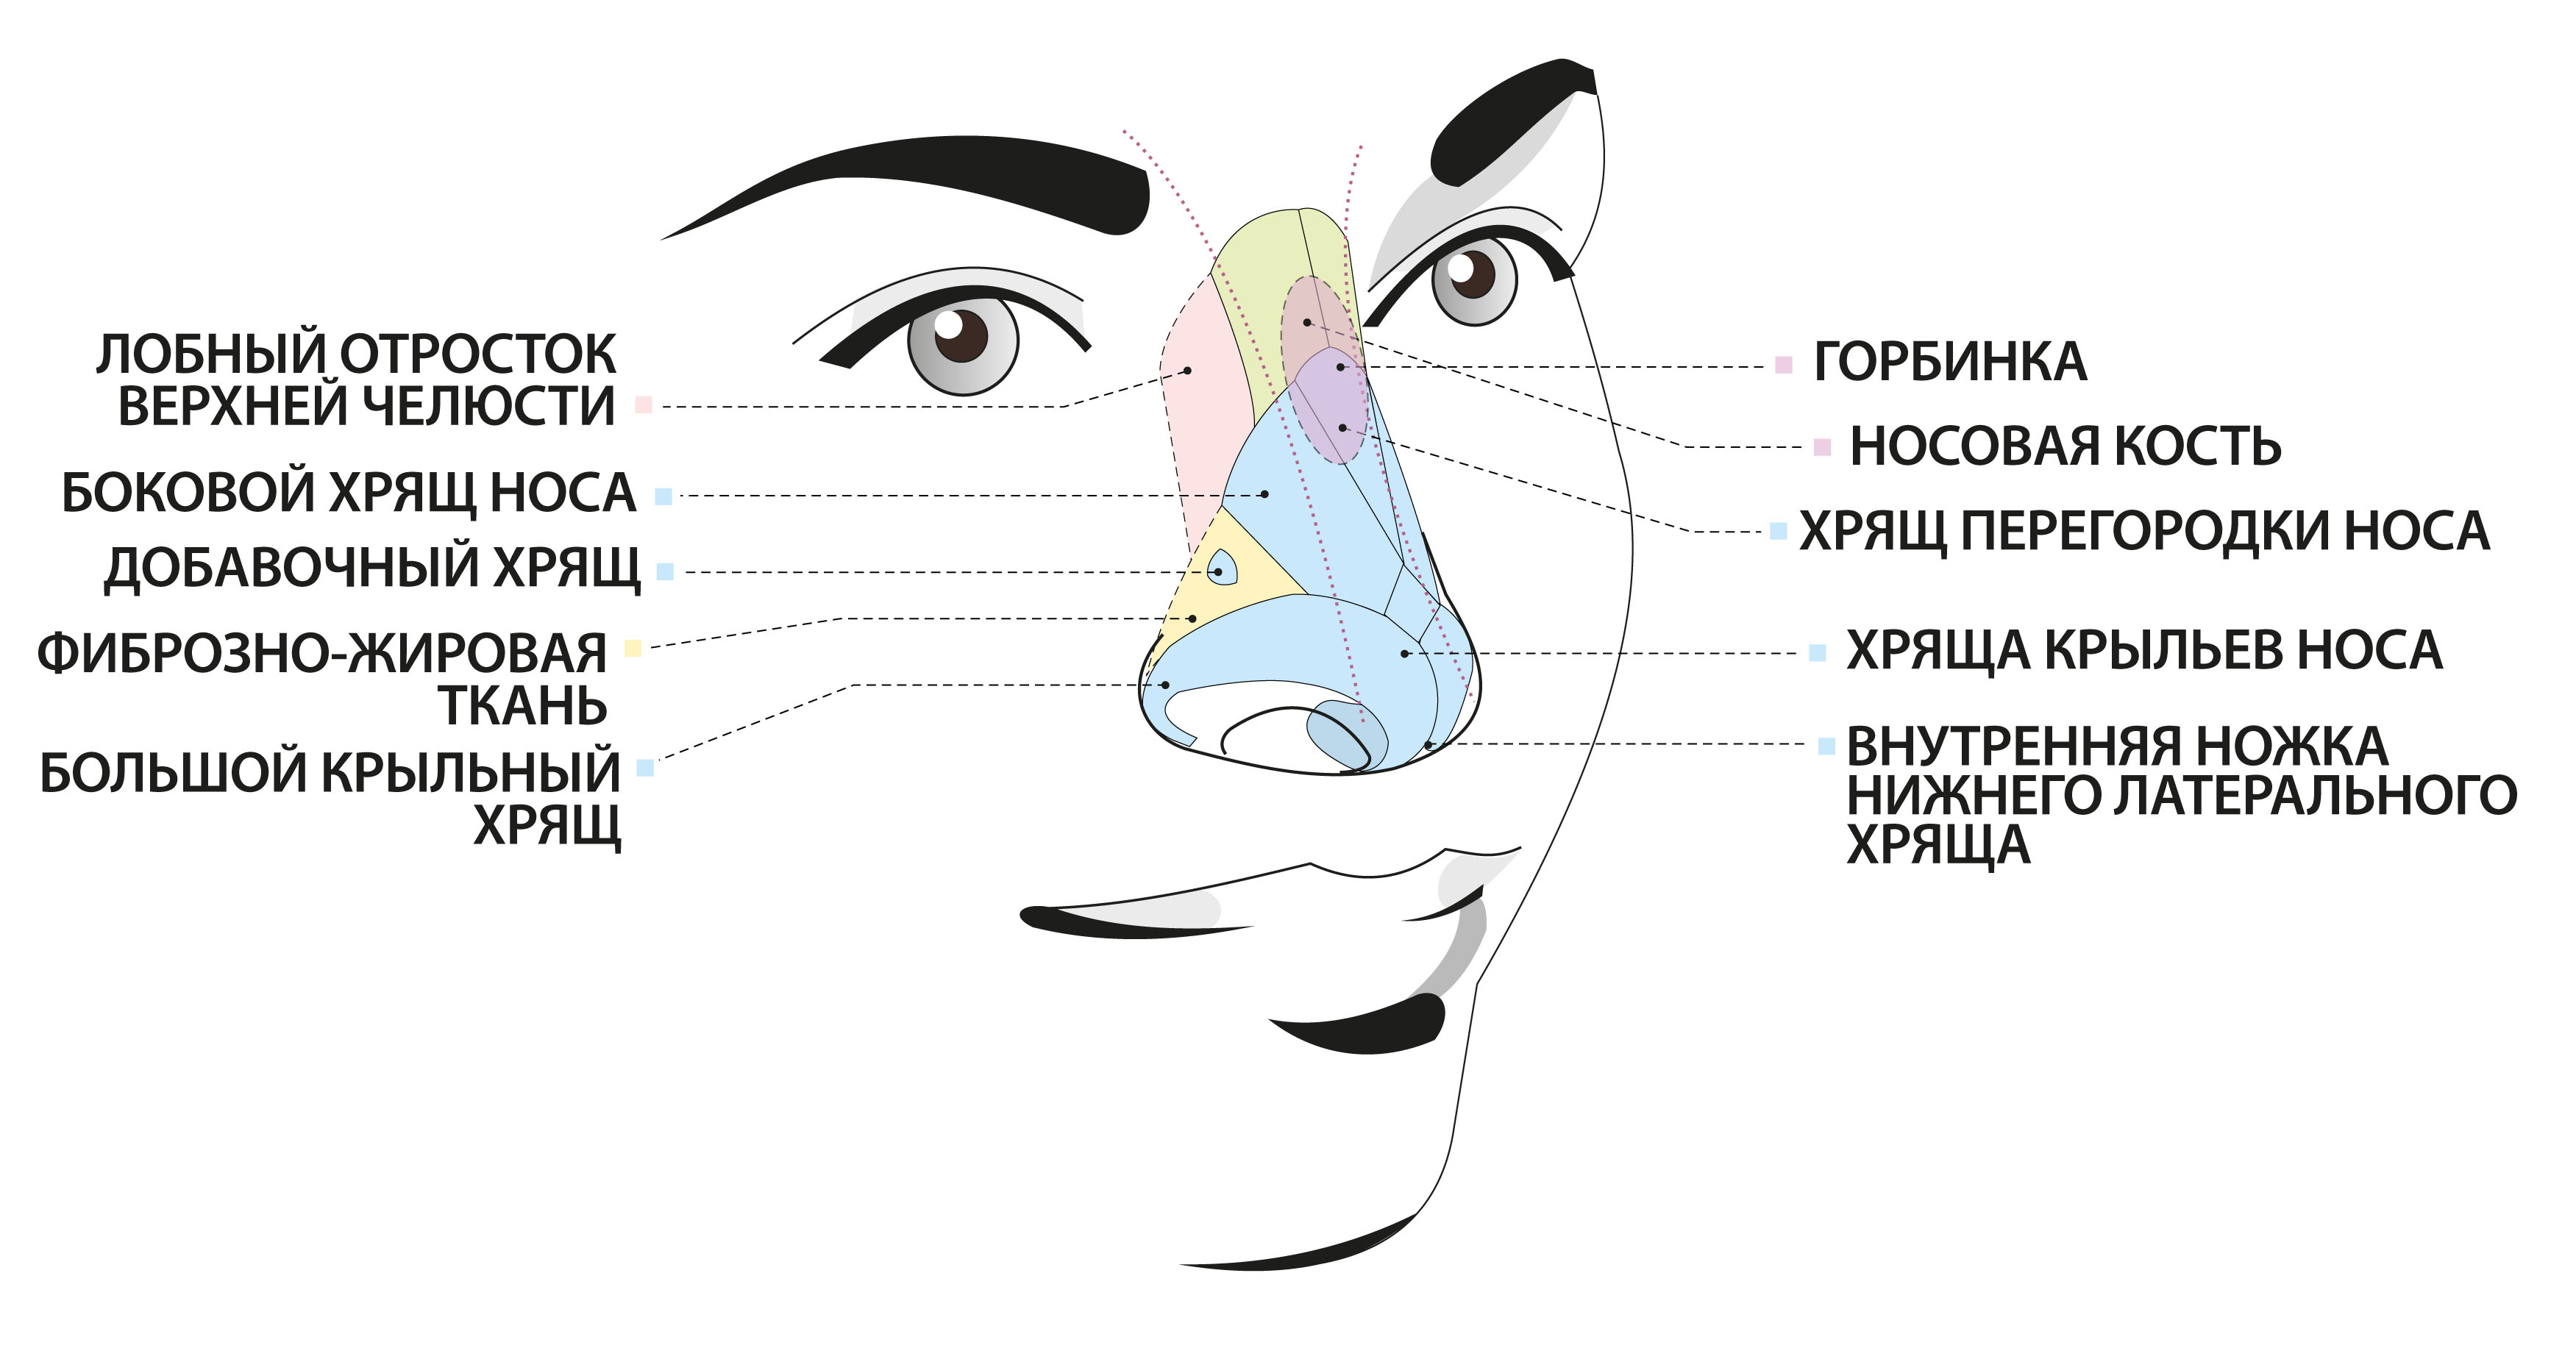 Строение человеческого носа